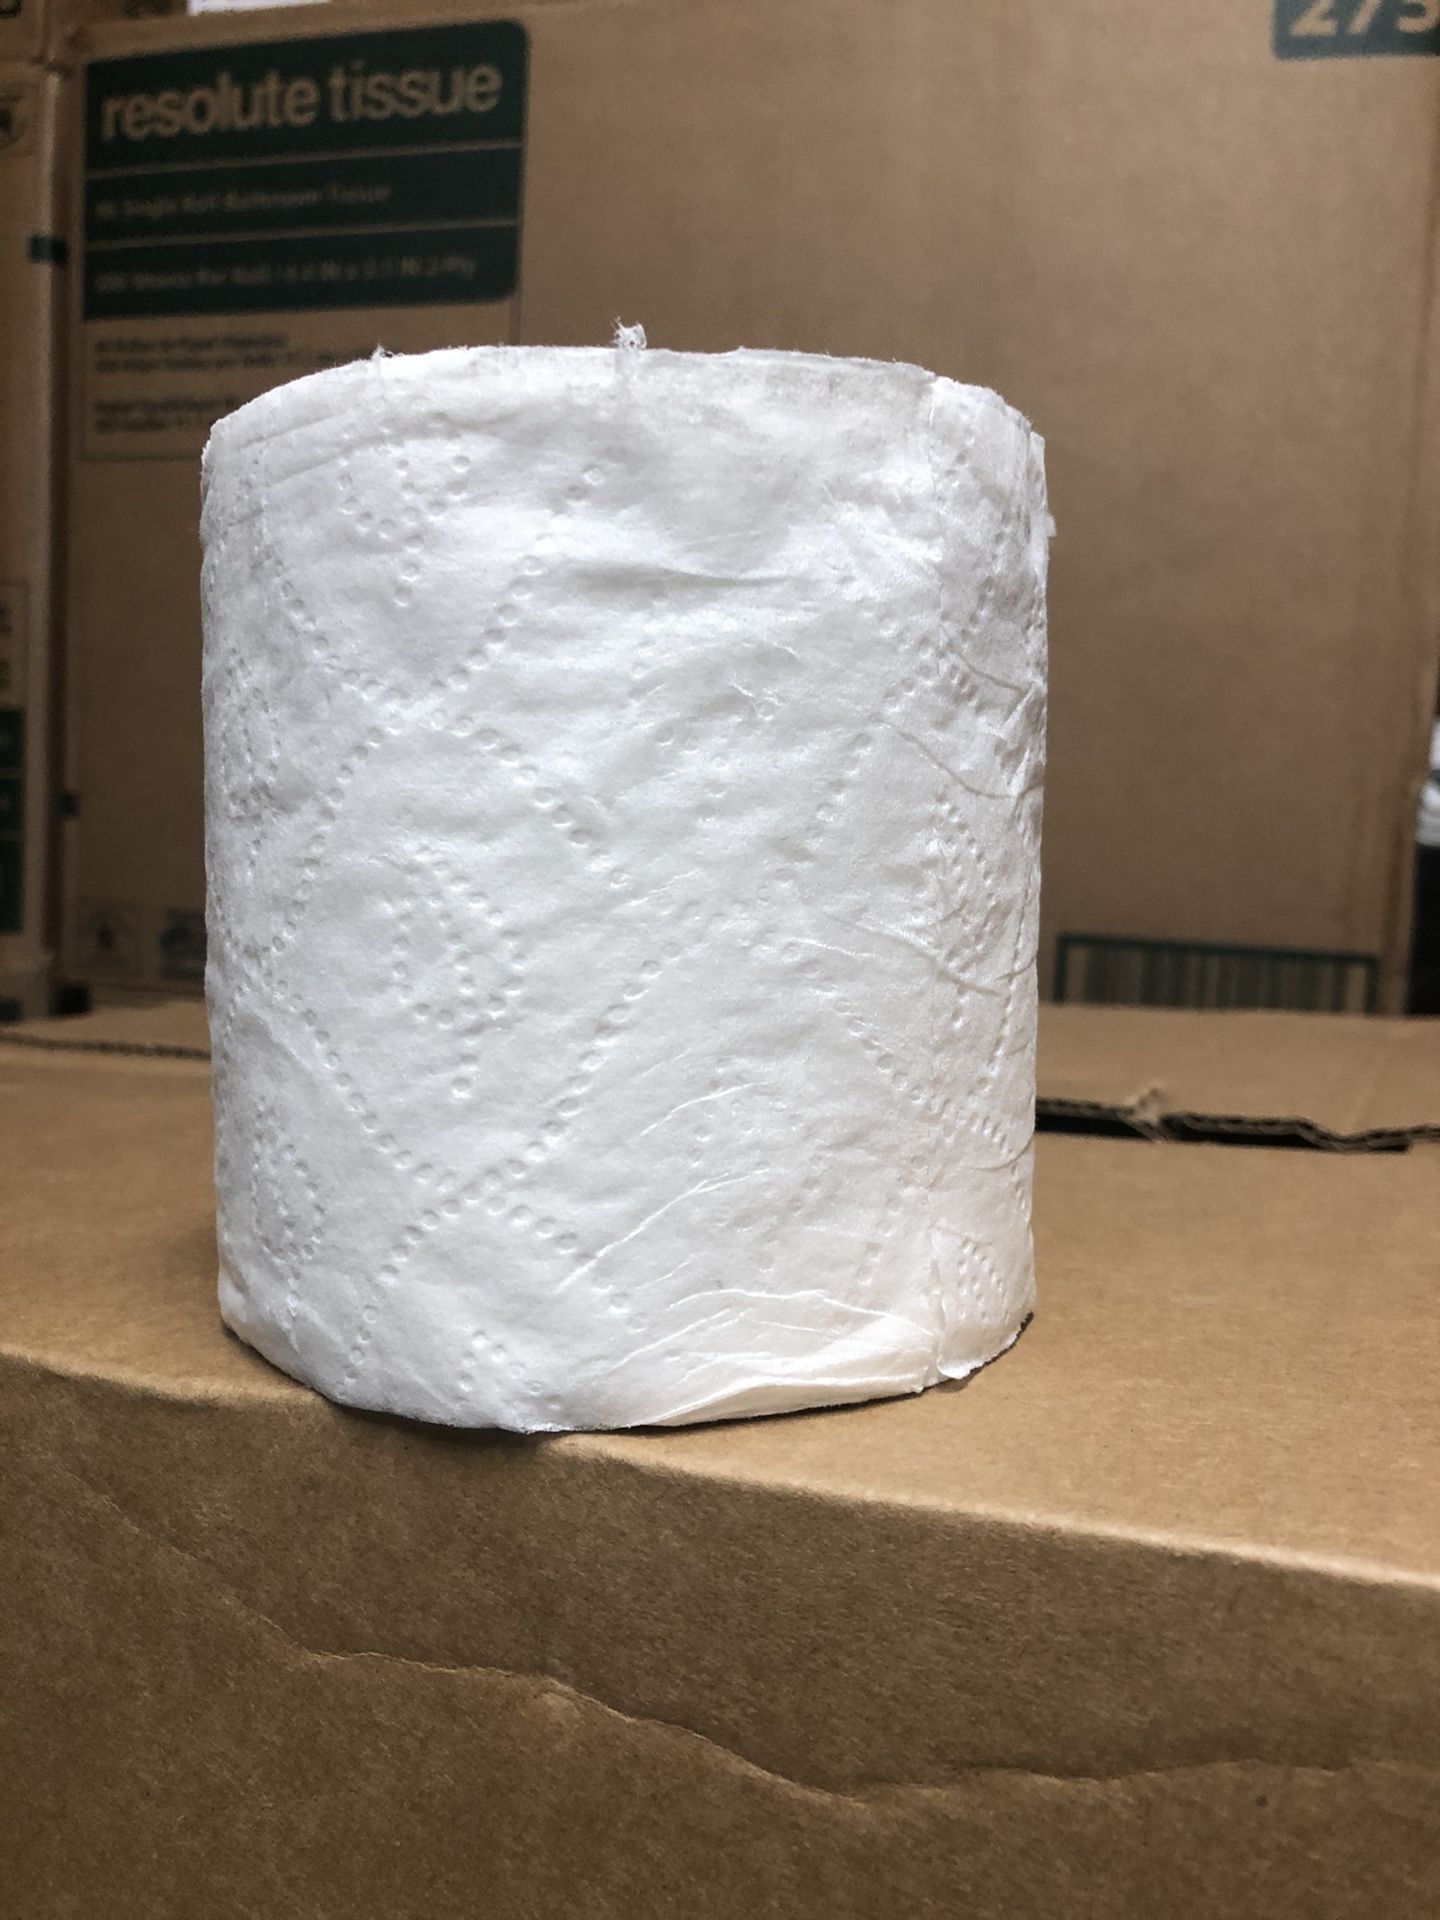 New box of T tissue 96 rolls 2 ply / caja Nueba de papel ijienico dos pliegas